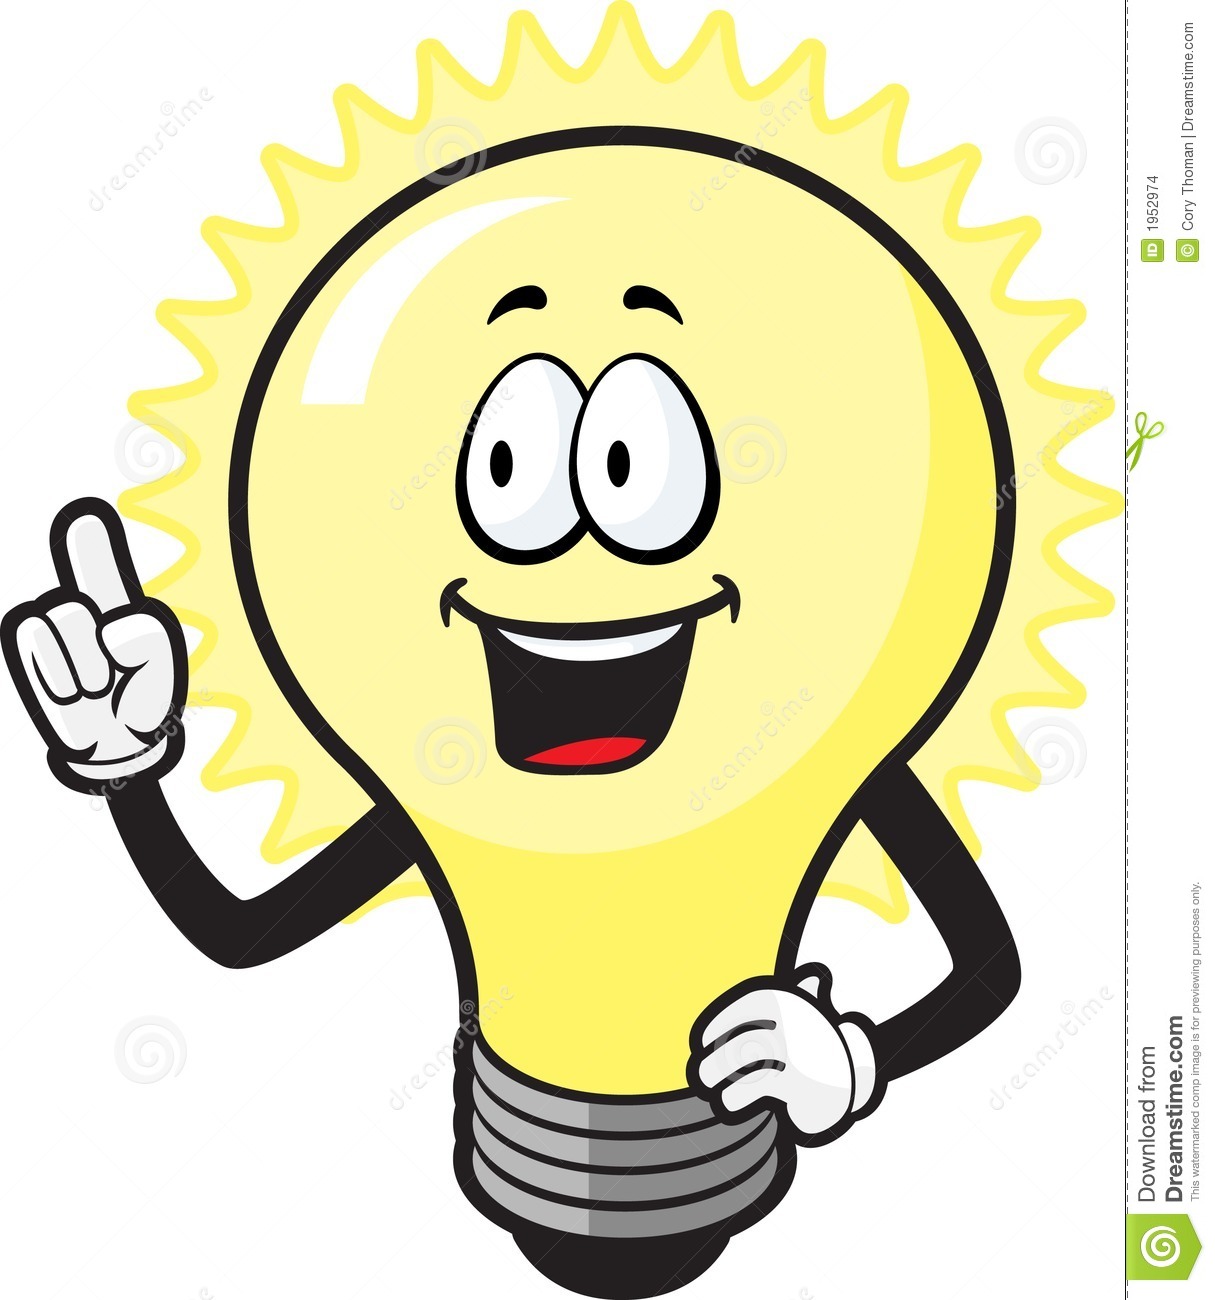 thinking-light-bulb-clip-art-lightbulb-guy-1952974.jpg